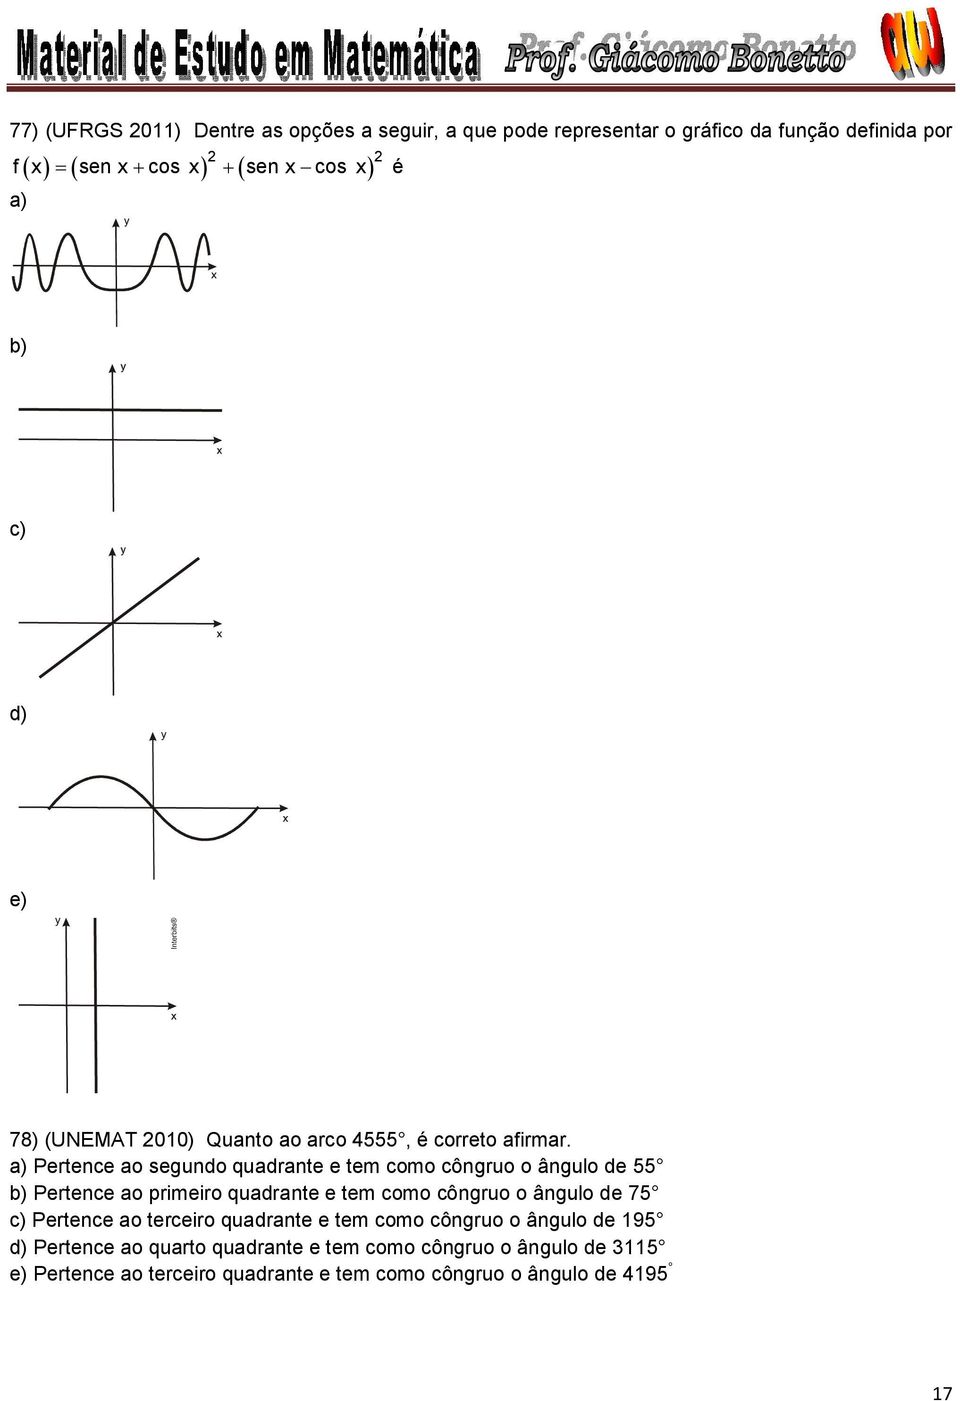 a) Pertence a segund quadrante e tem cm côngru ângul de b) Pertence a primeir quadrante e tem cm côngru ângul de 7